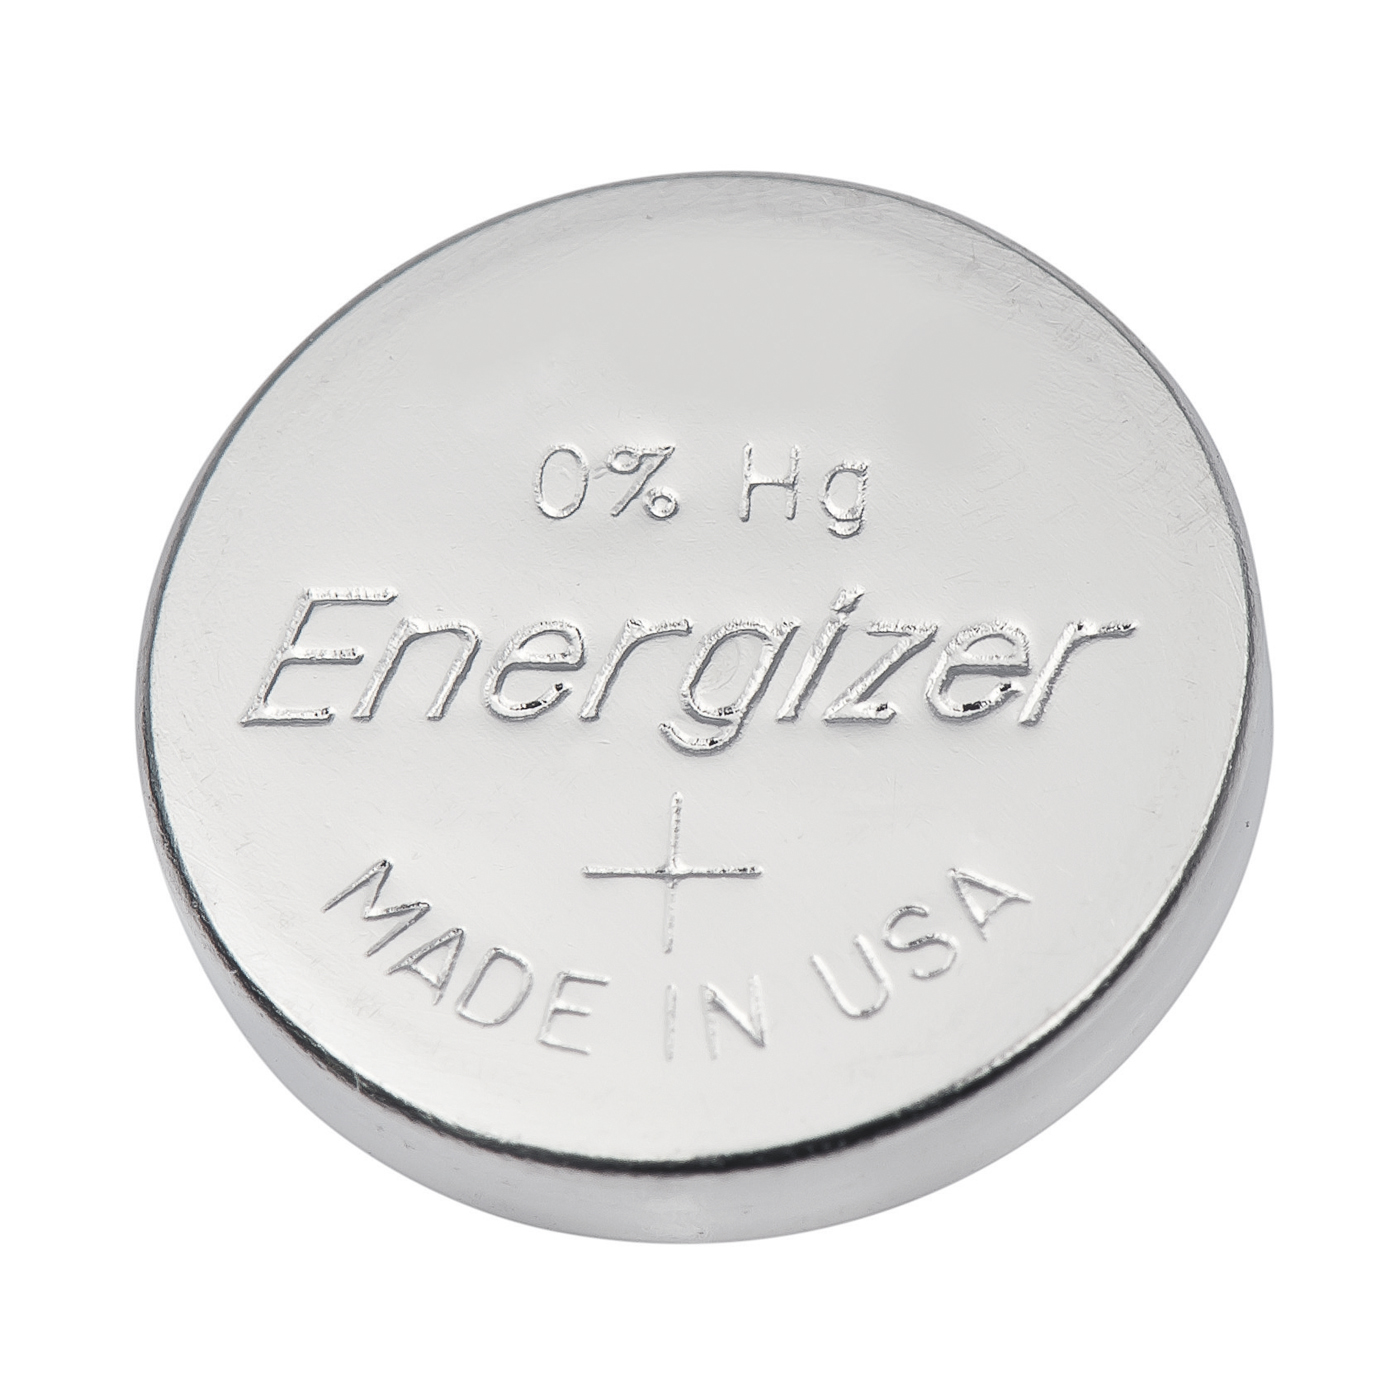 Energizer Uhrenbatterien 393/309, MD, ø 7,9 x 5,35 mm - 10 Stück